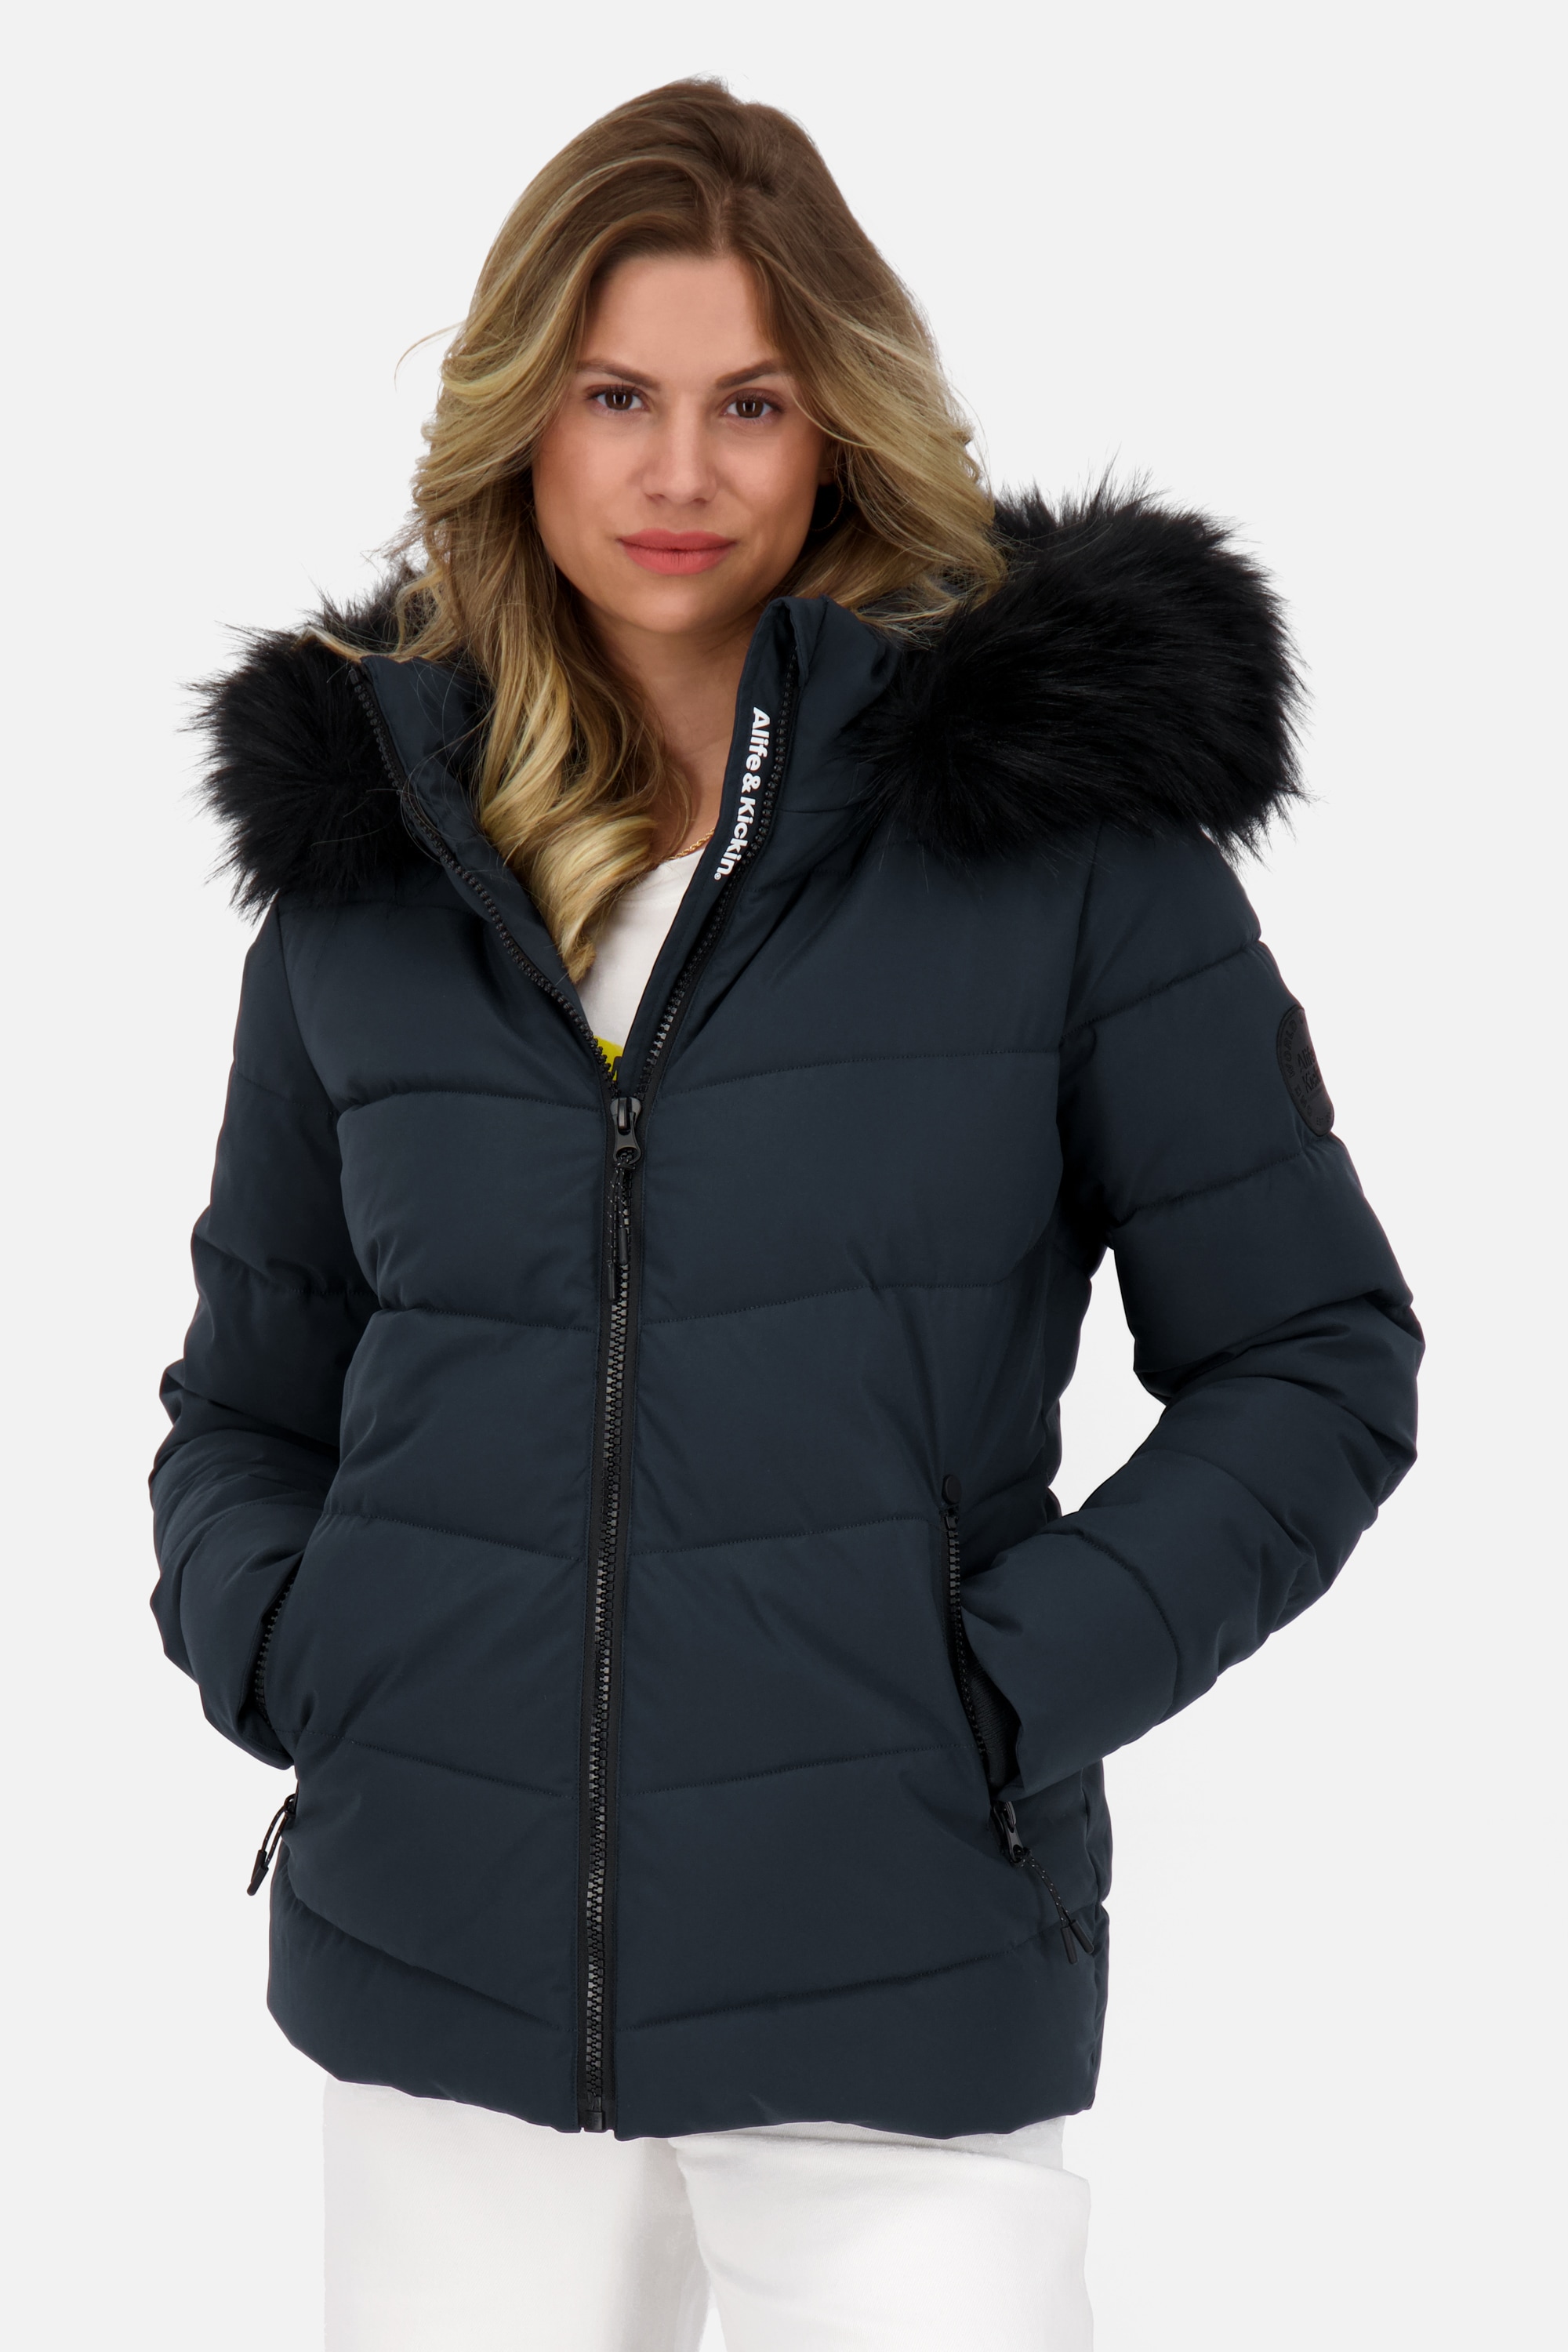 Alife & Kickin Winterjacke »AdelaAK A Puffer Jacket Damen Steppjacke,  Winterjacke« online kaufen | I'm walking